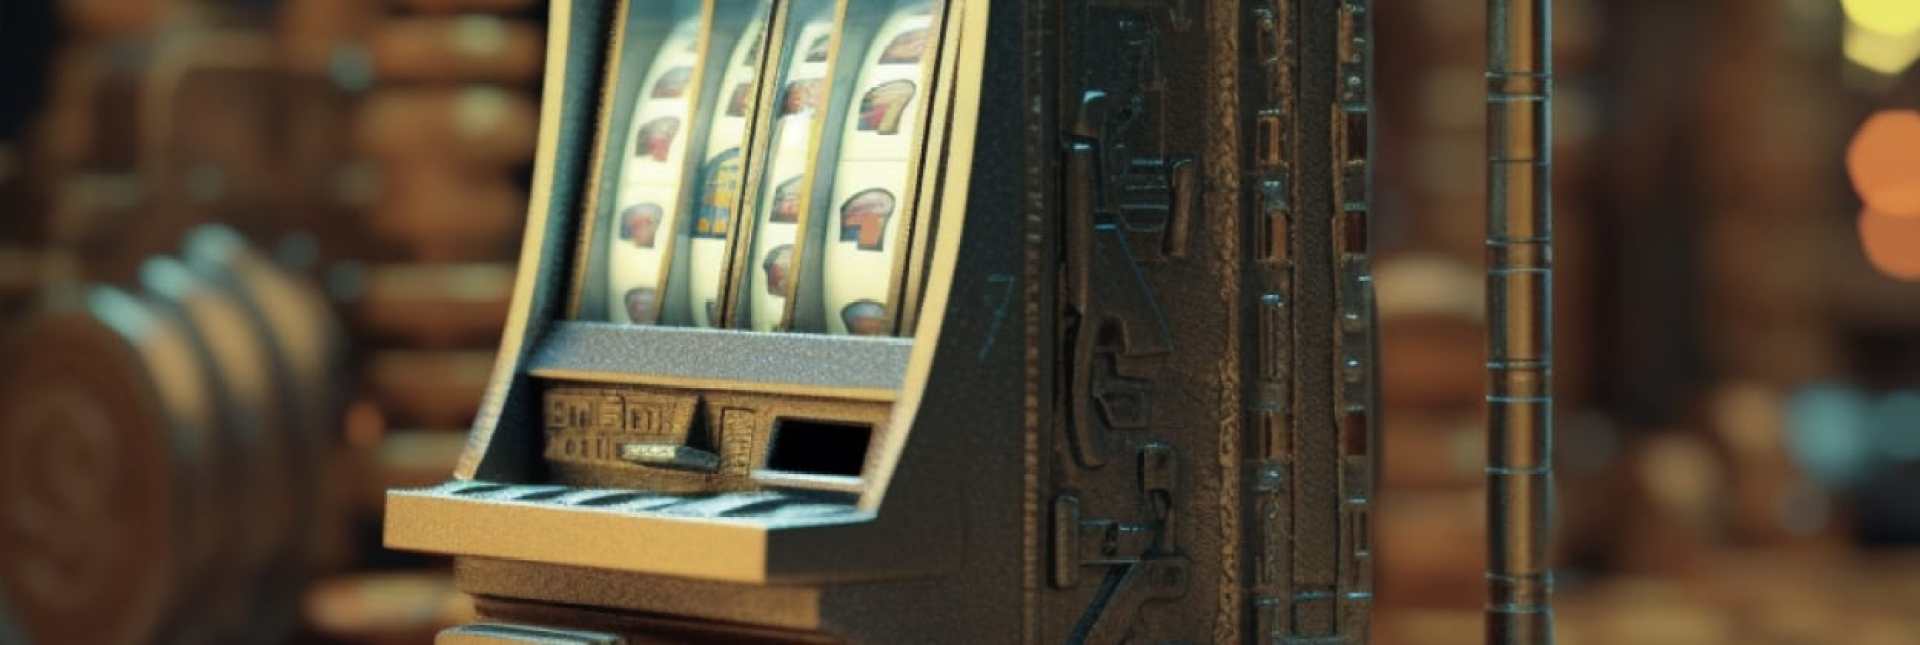 Litecoin Casino slot machines